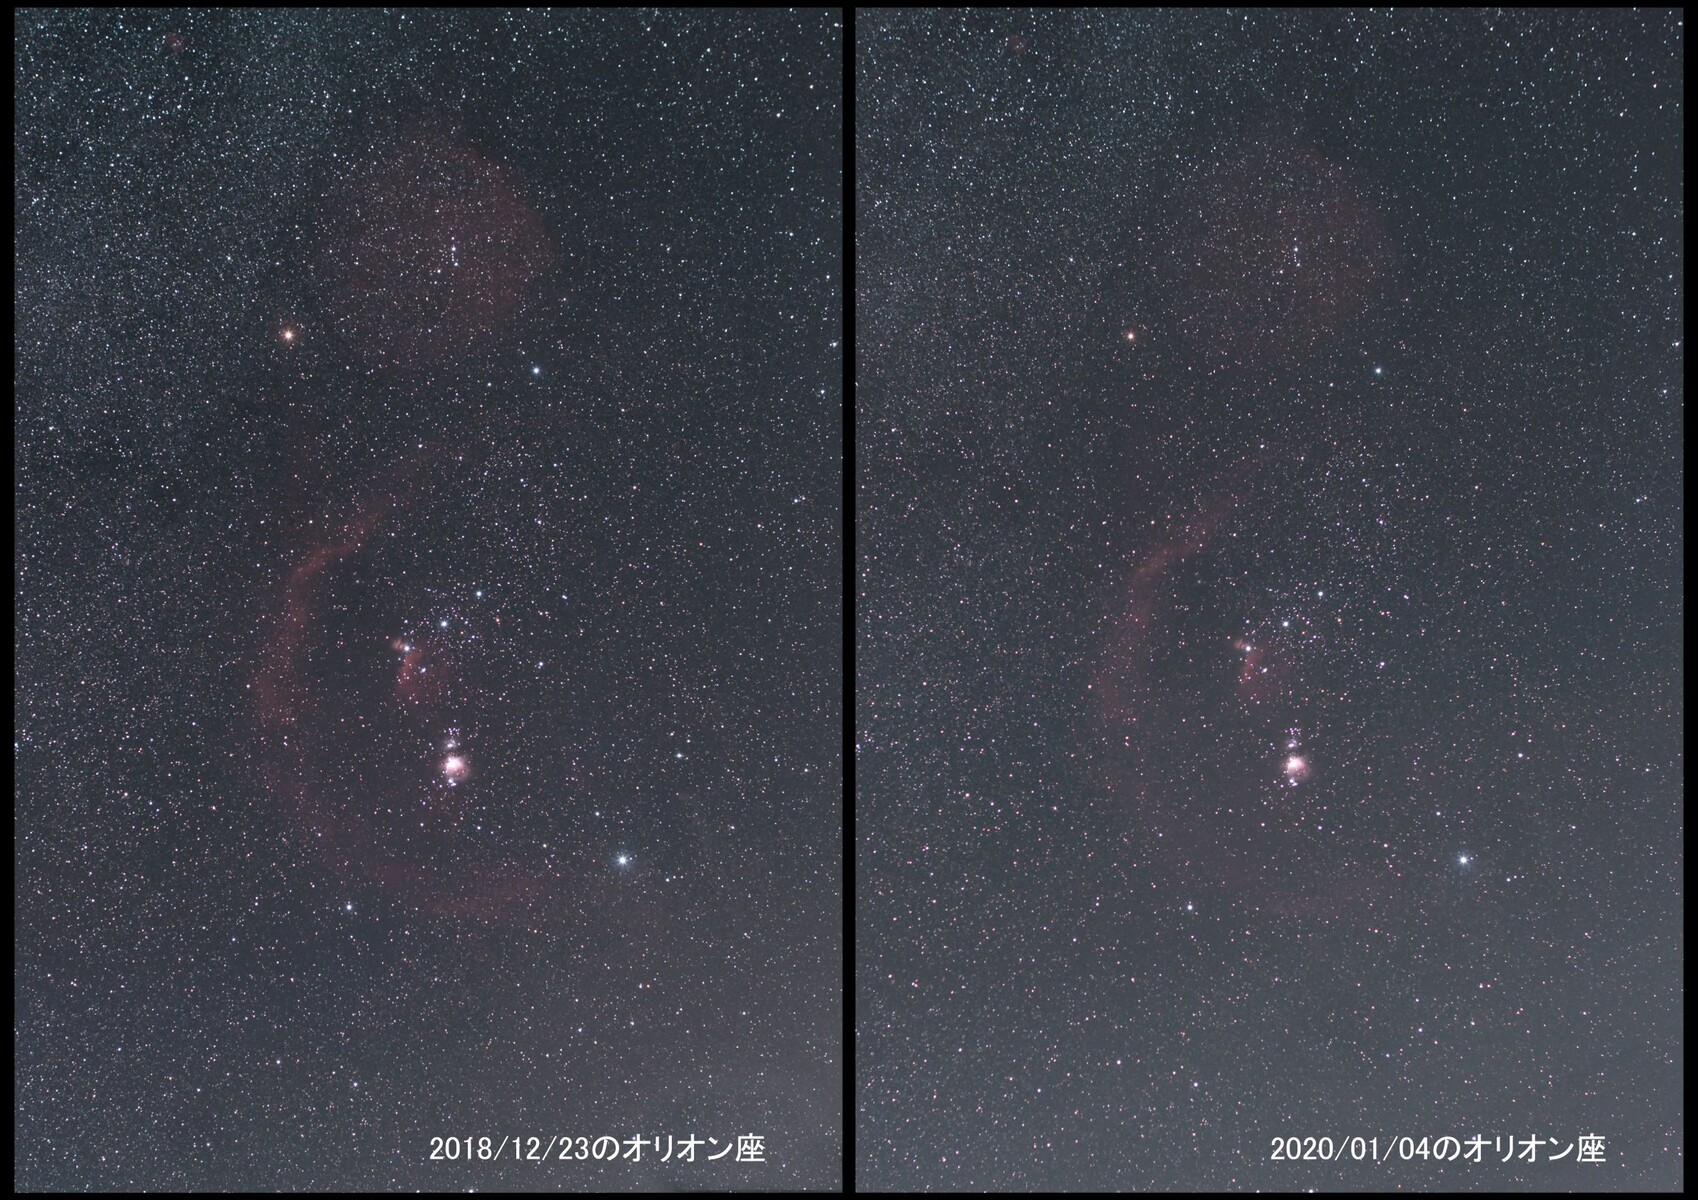 ベテルギウスの減光 １年前の画像との比較 01 10 中川光学研究室ブログ